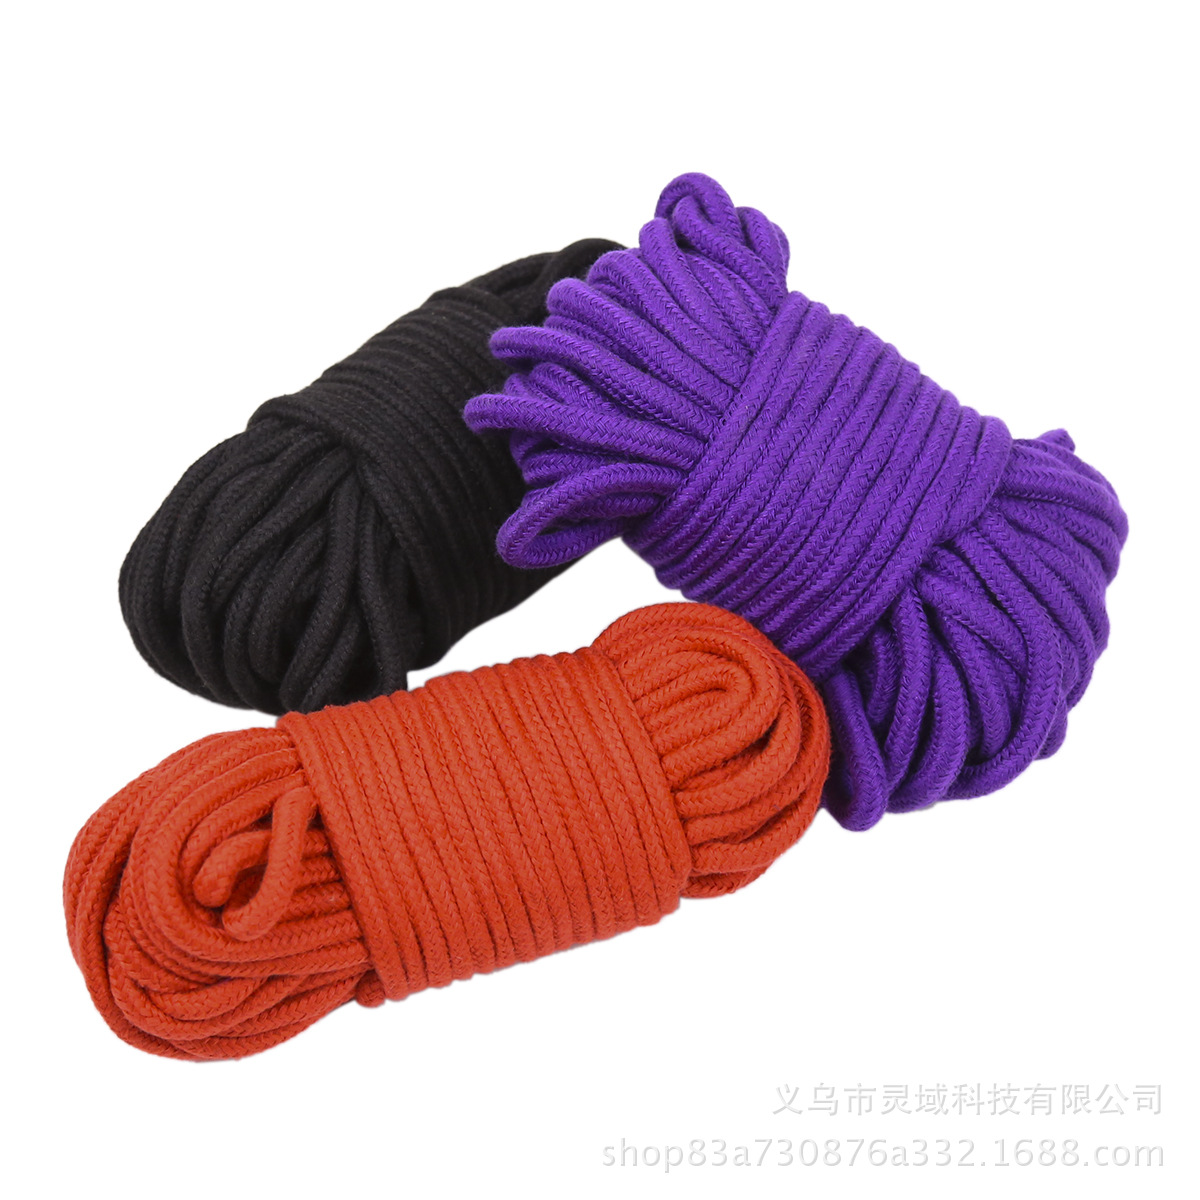 厂家直供情趣棉绳麻绳丝绳艺捆绑束缚男女用绳子另类约束性工玩具